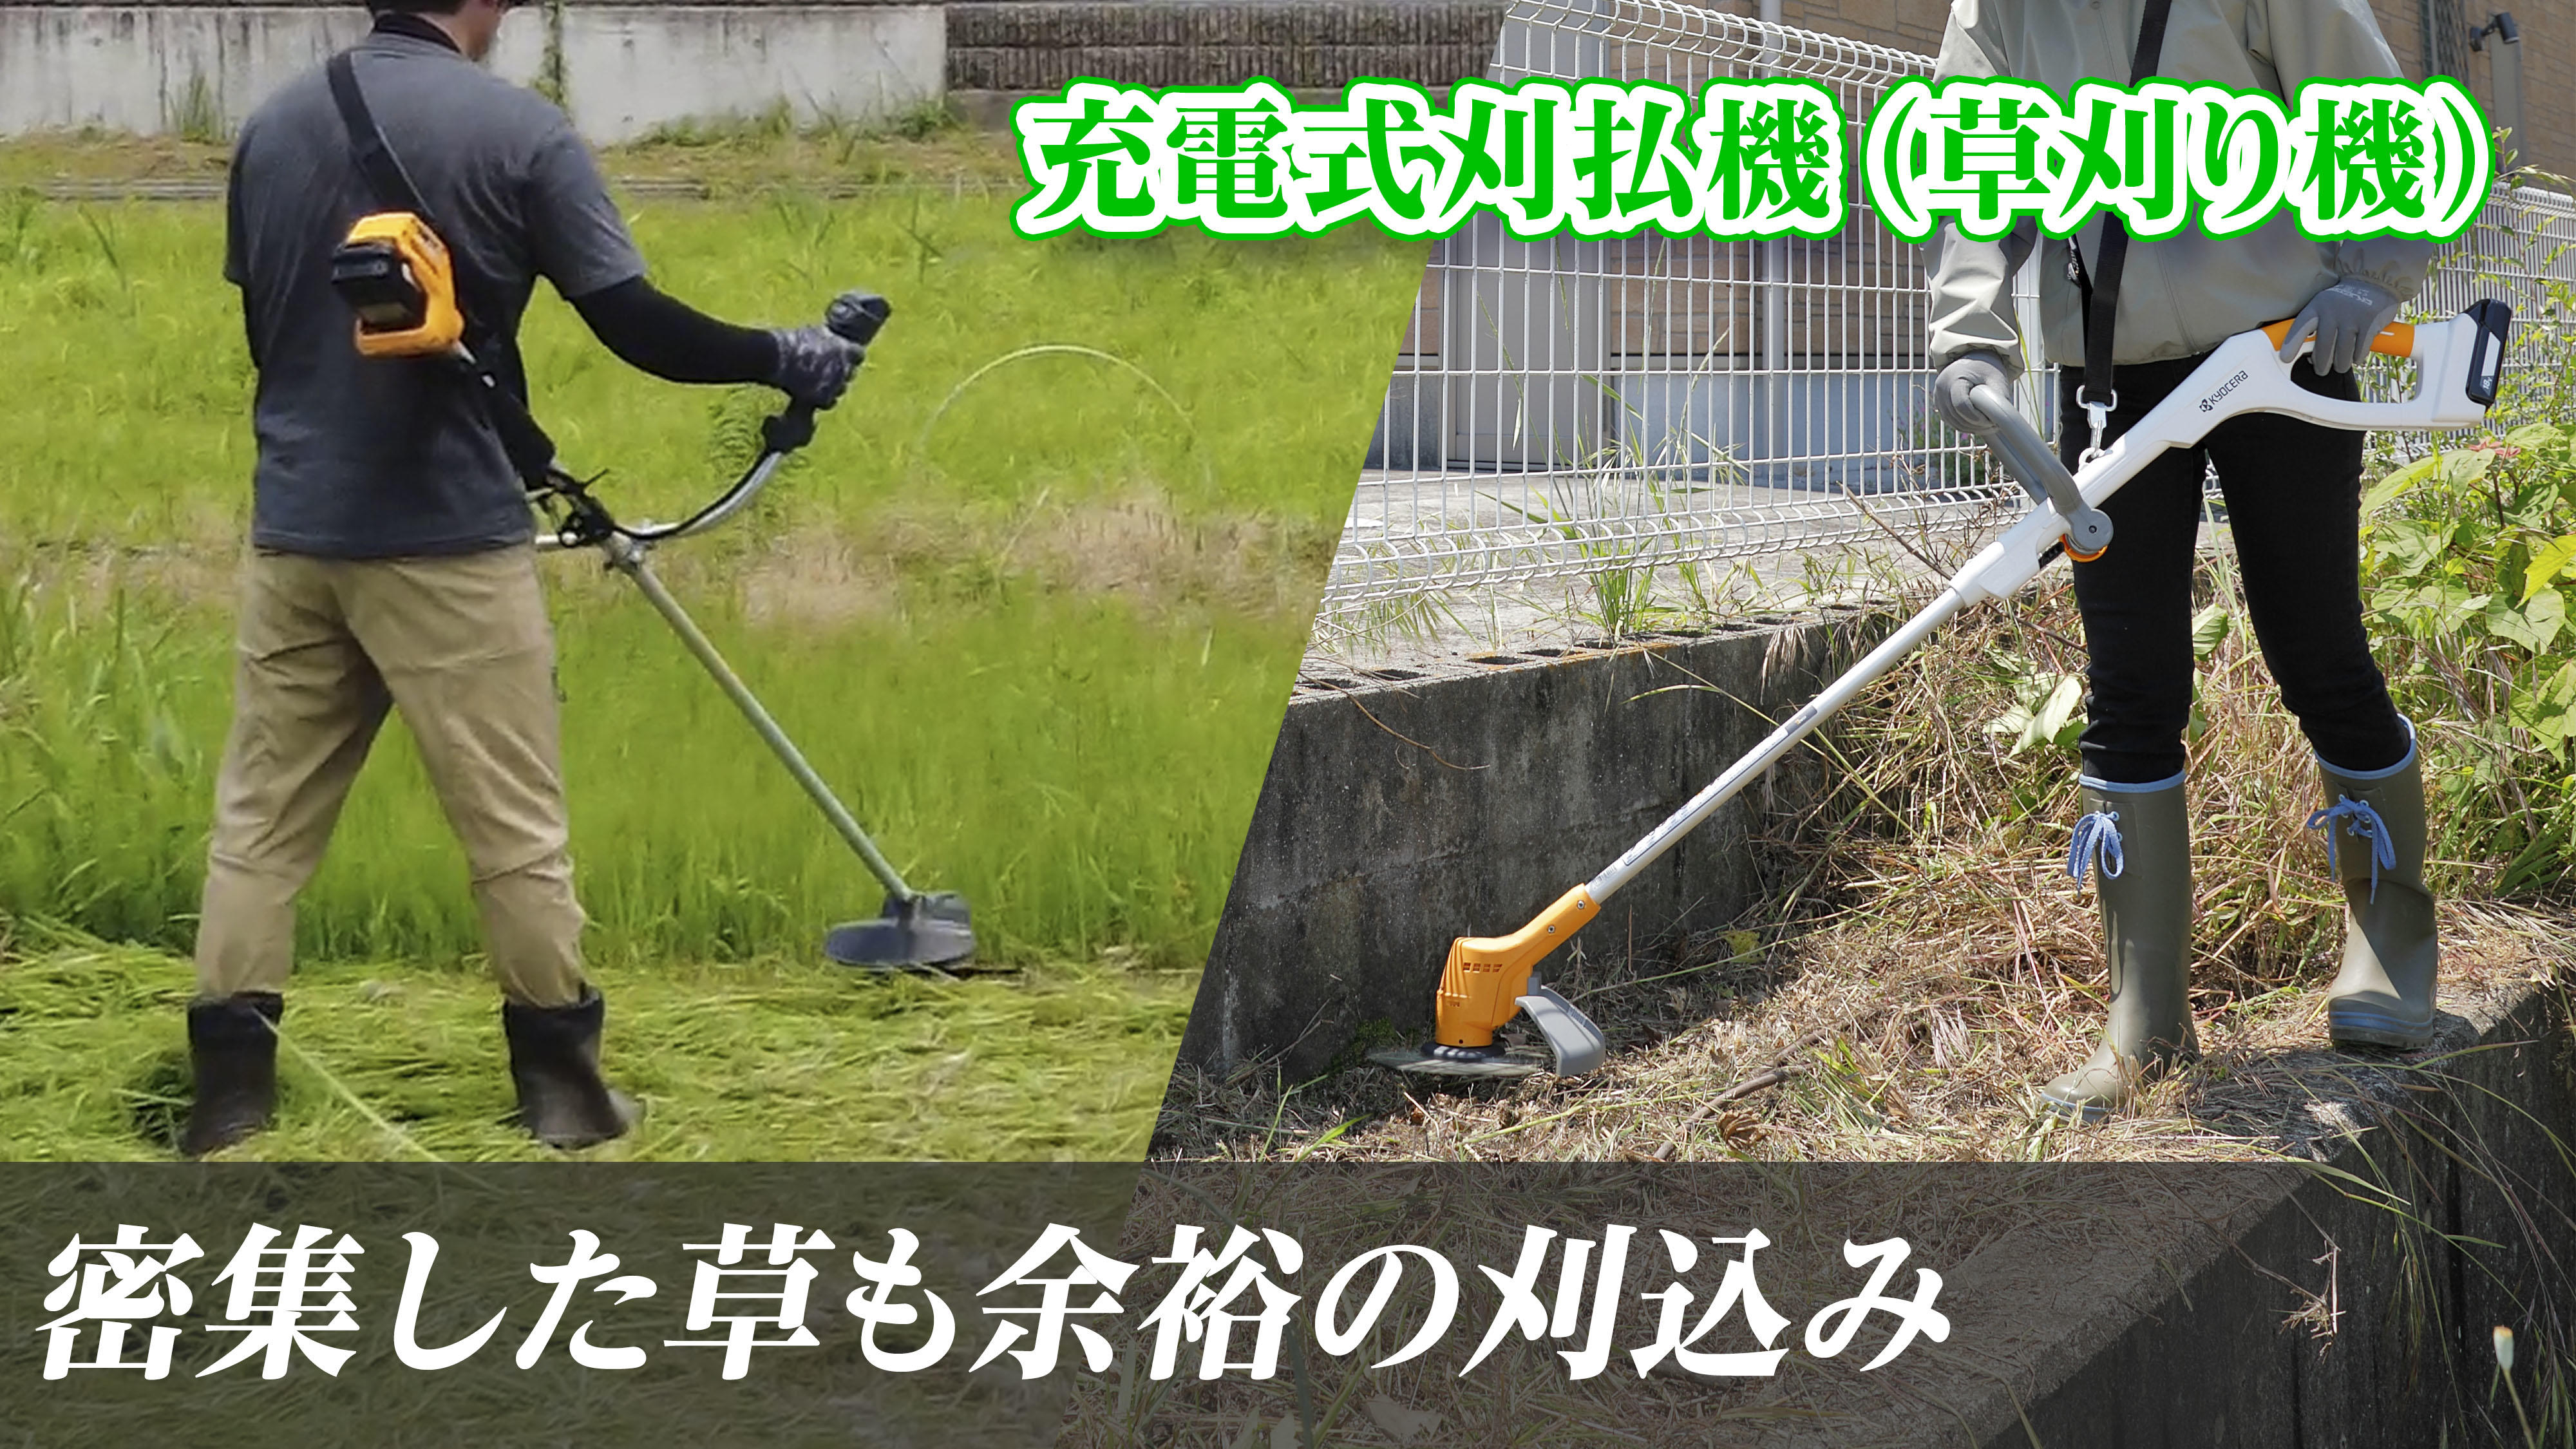 静かでよく刈れ、手軽に使える！ 京セラの18ボルト充電式草刈り機